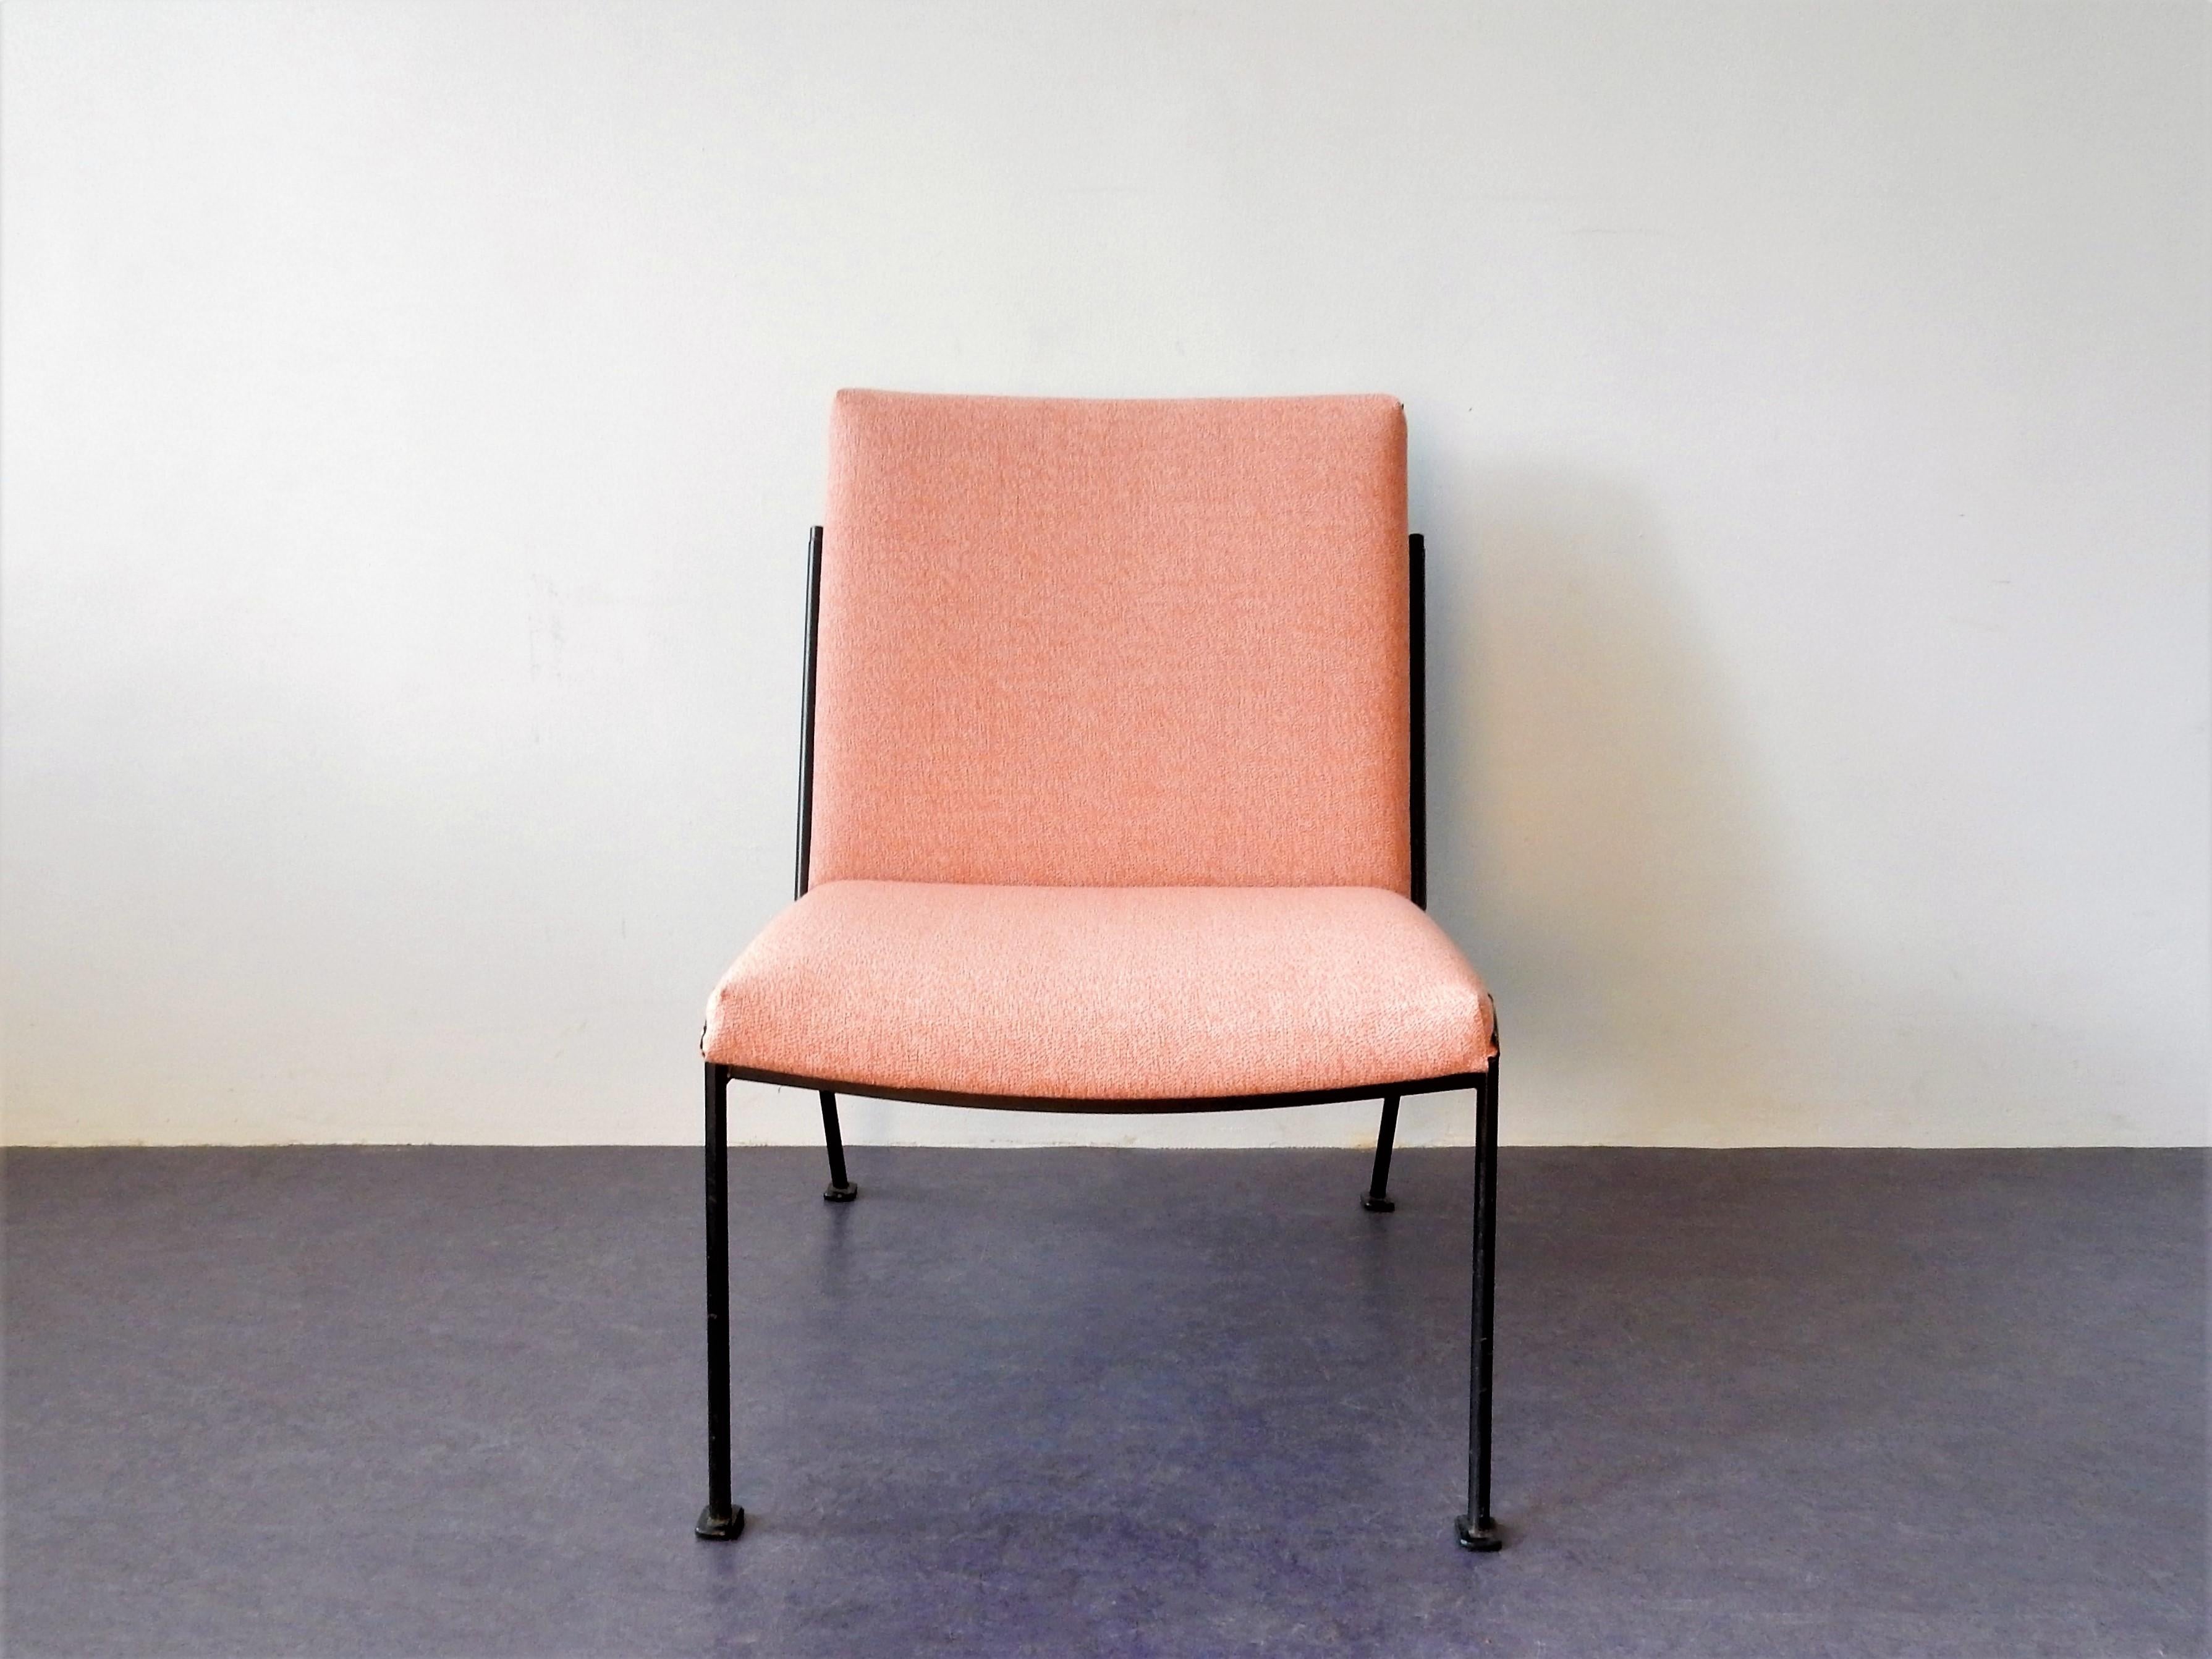 La chaise longue Oase a été conçue par Wim Rietveld pour Ahrend de Cirkel en 1958, et a reçu le prix Signe d'Or en 1959. Une belle pièce de design hollandais ! Cette chaise est nouvellement tapissée et sa mousse est neuve. Cette version sans